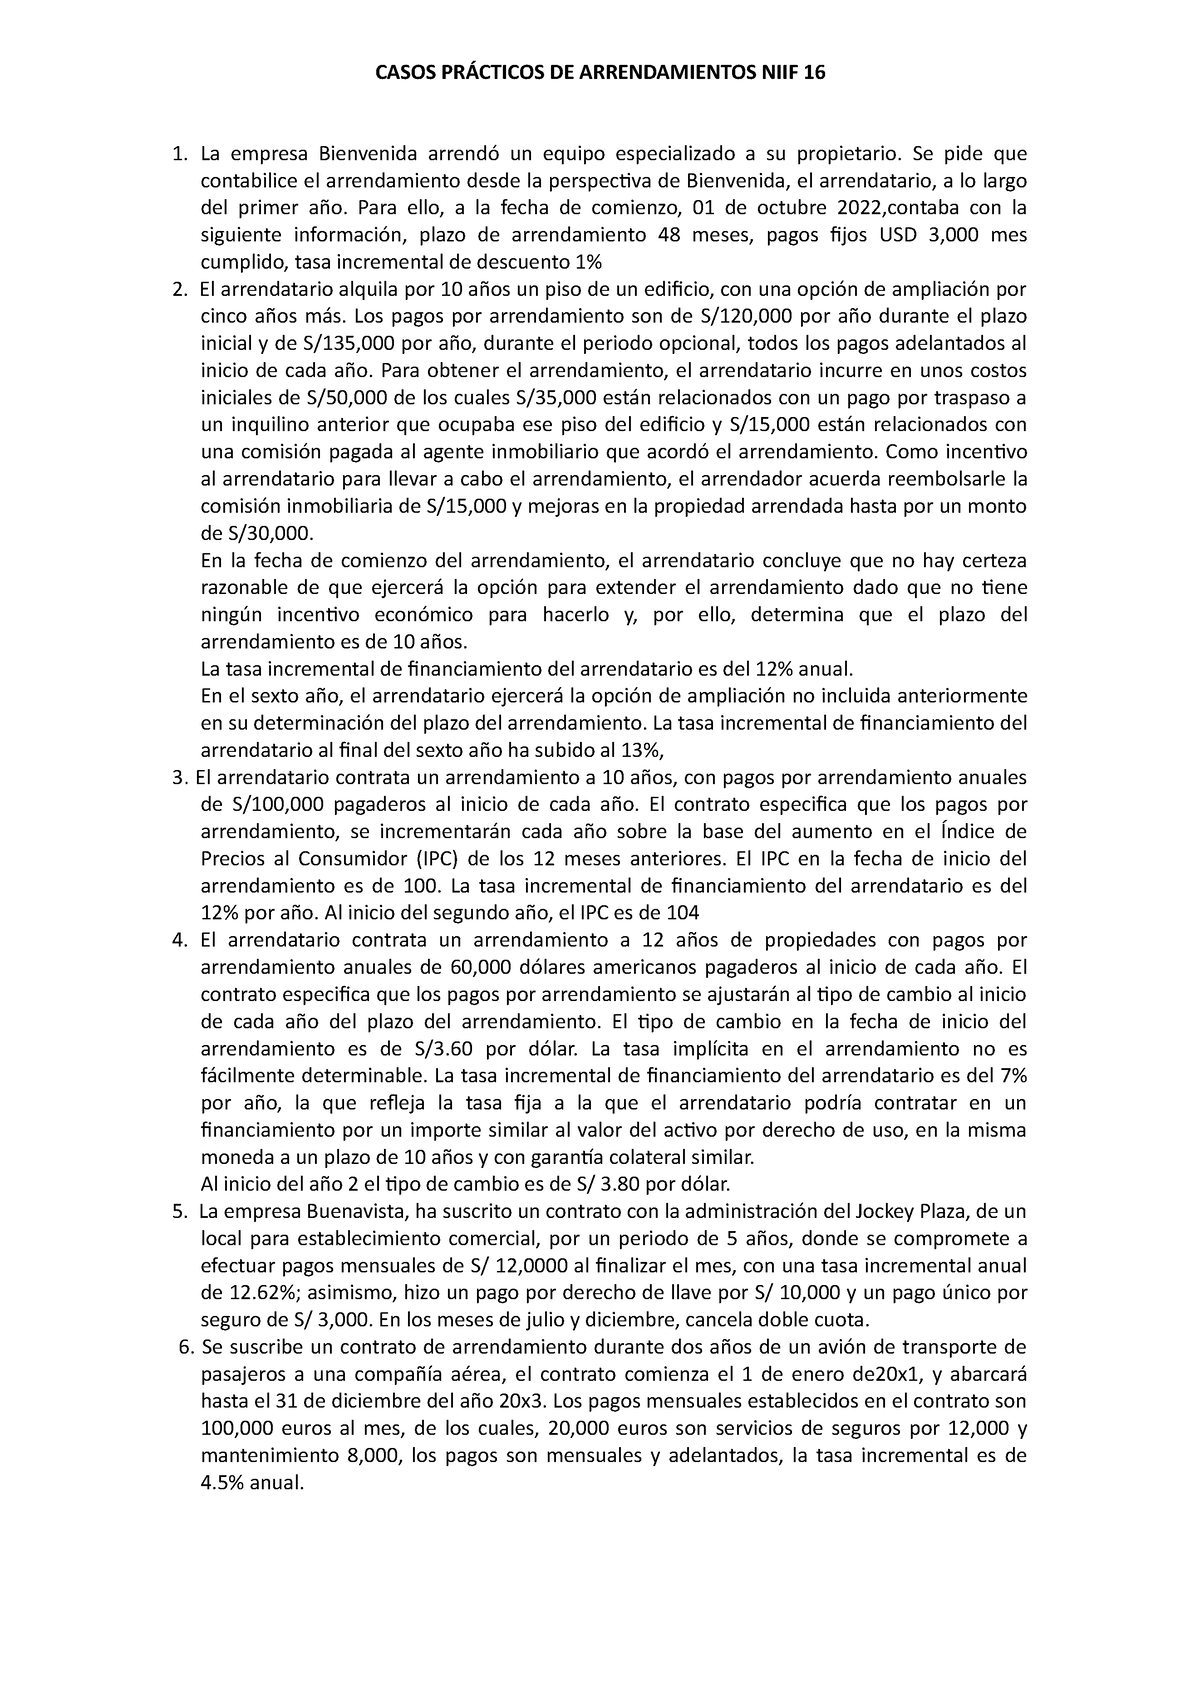 Casos Prácticos Casos PrÁcticos De Arrendamientos Niif 16 La Empresa Bienvenida Arrendó Un 0667